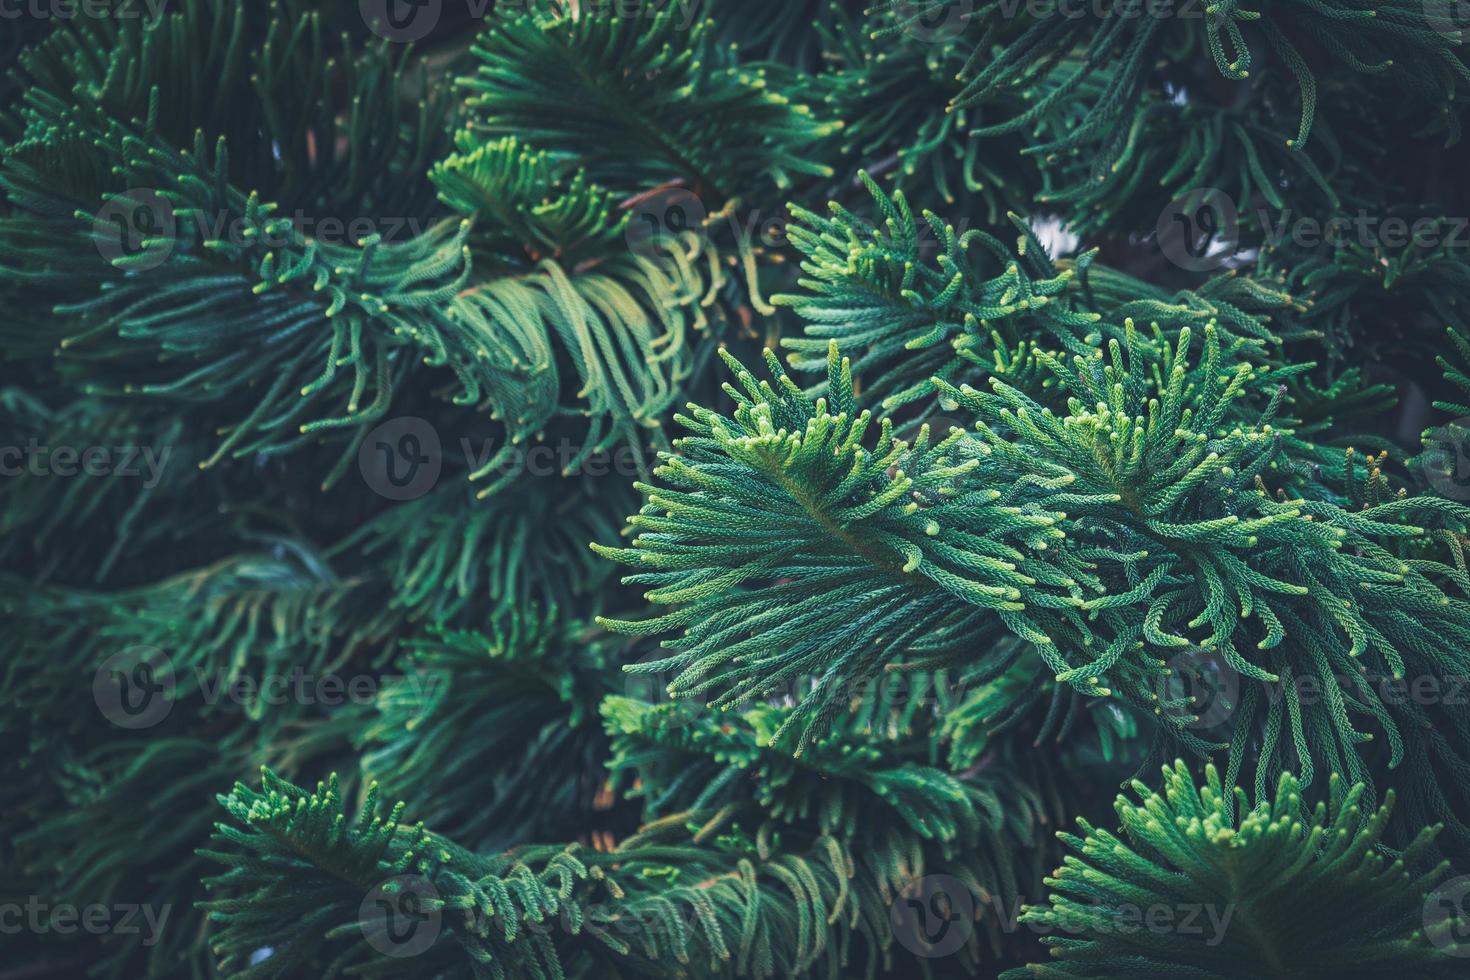 naaldbladeren van de dennenboom van het Norfolkeiland foto